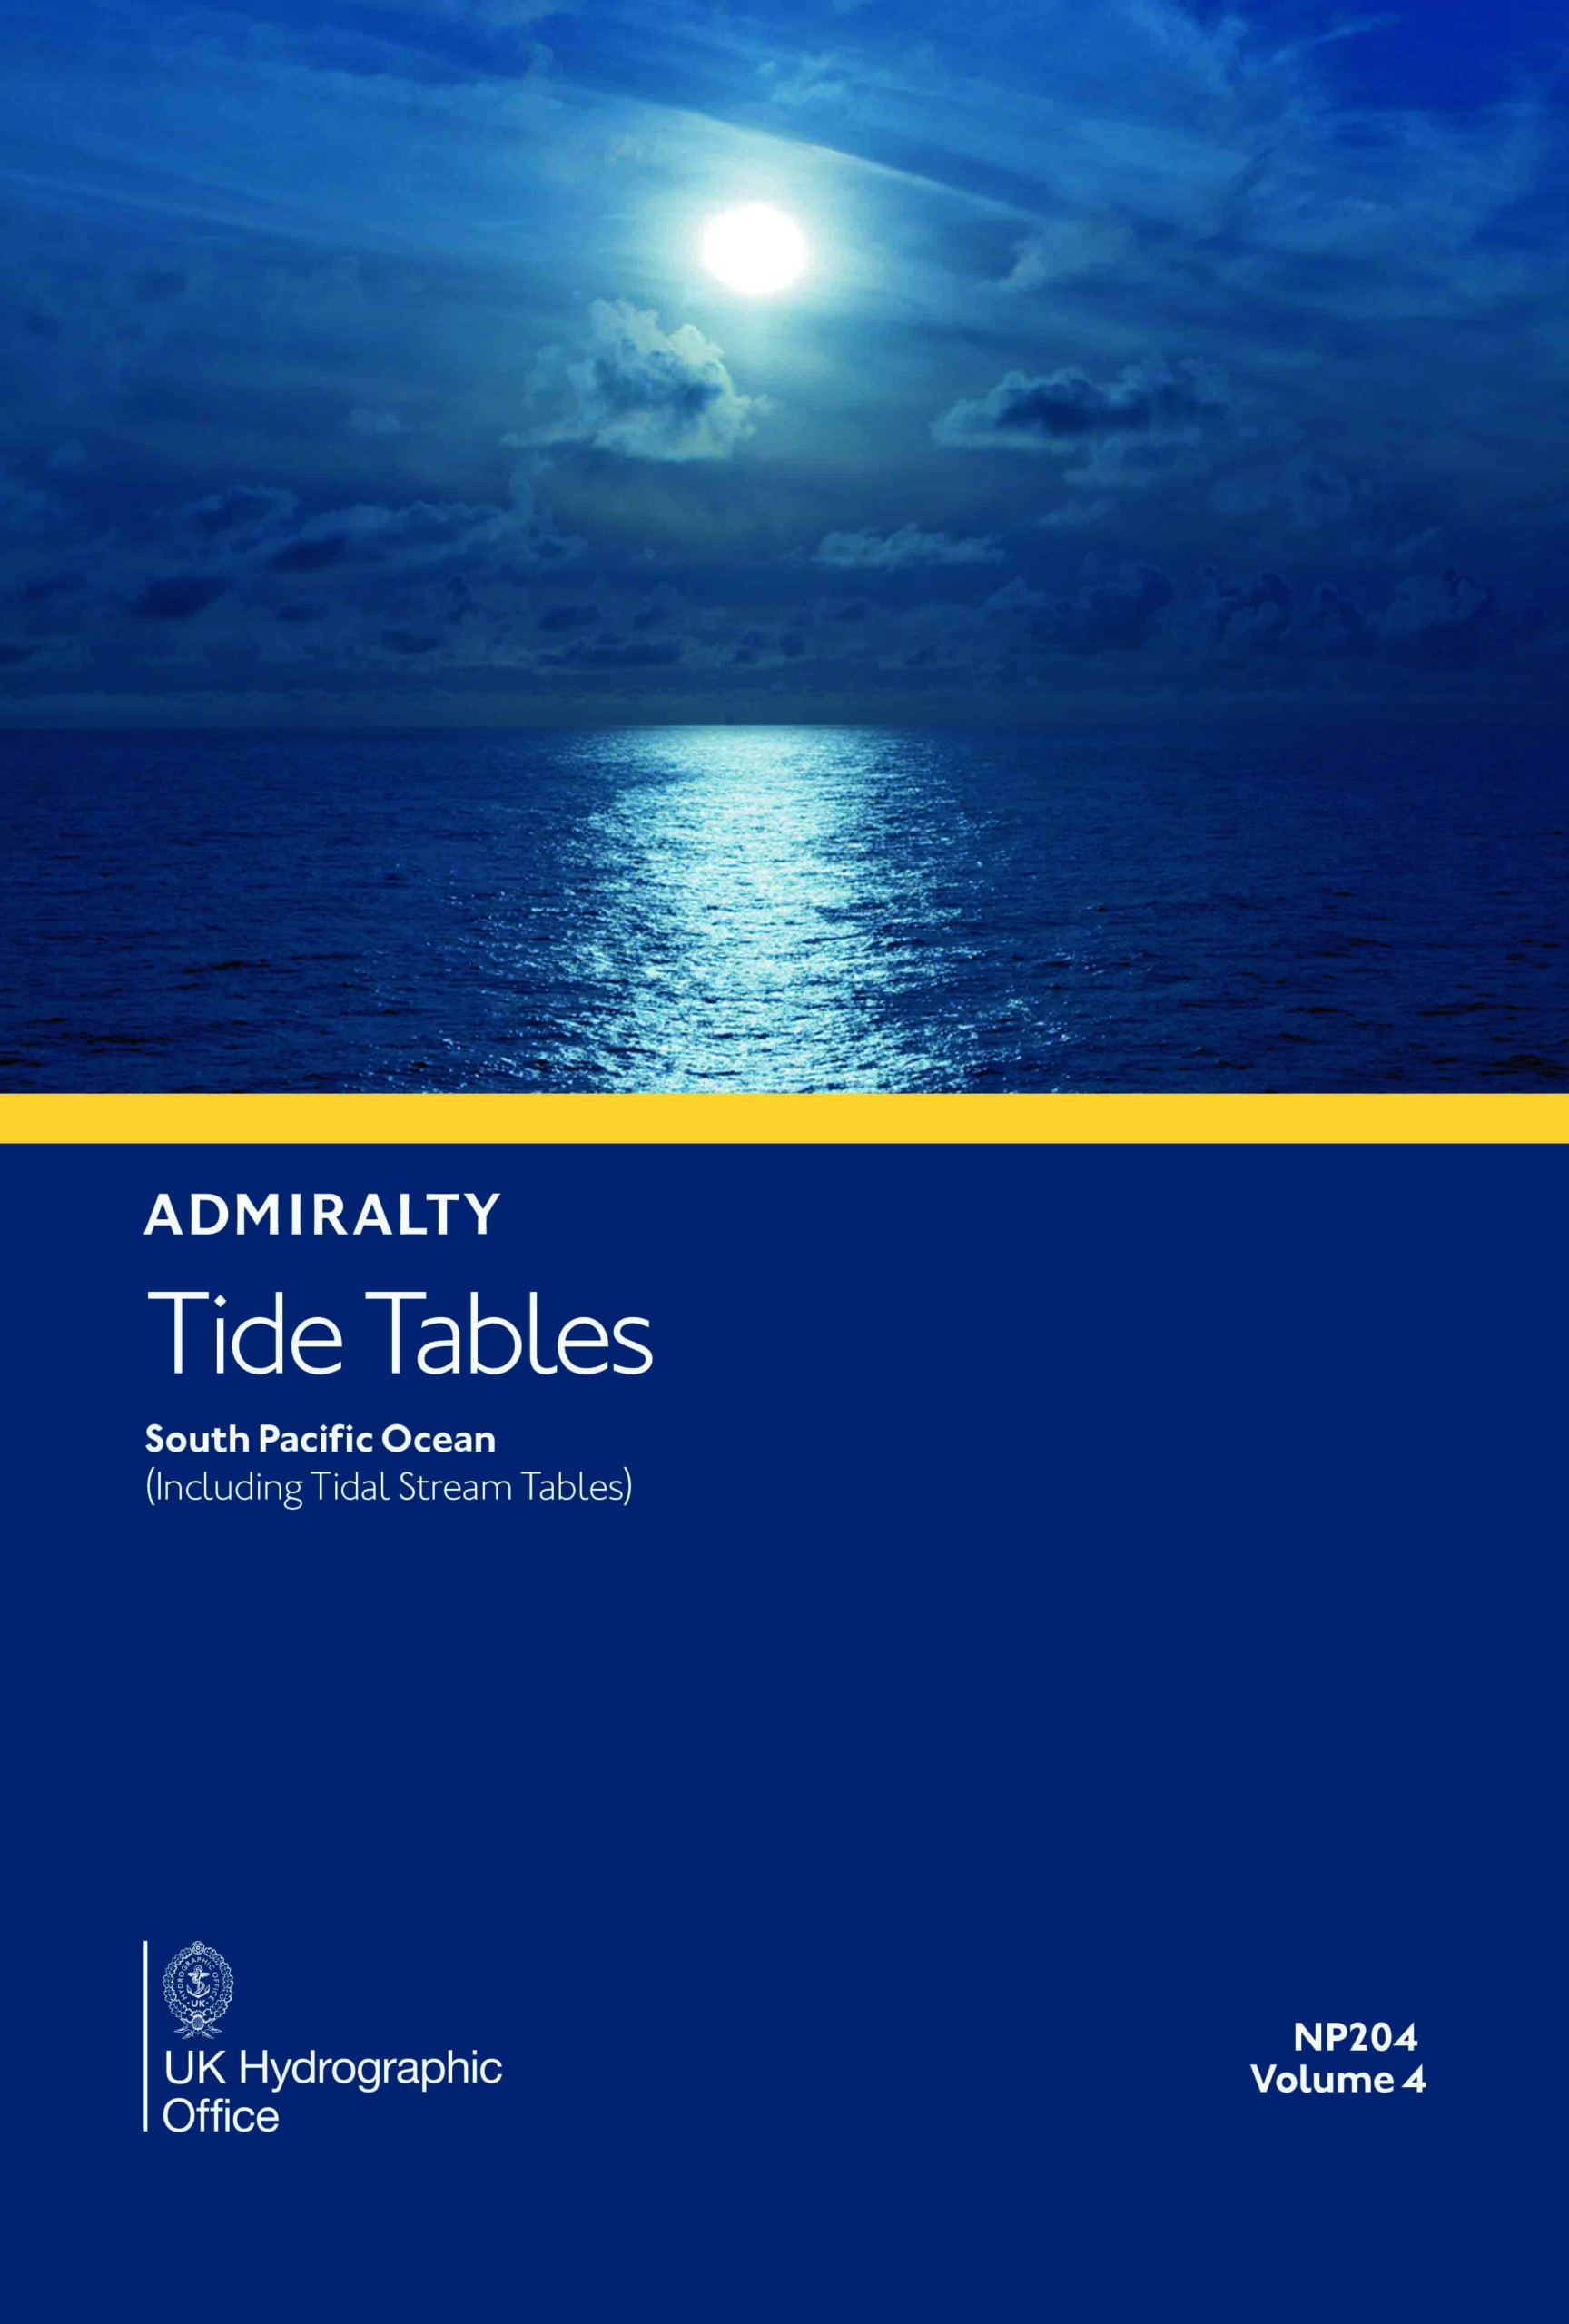 NP204 Tide Tables Vol. 4 2025